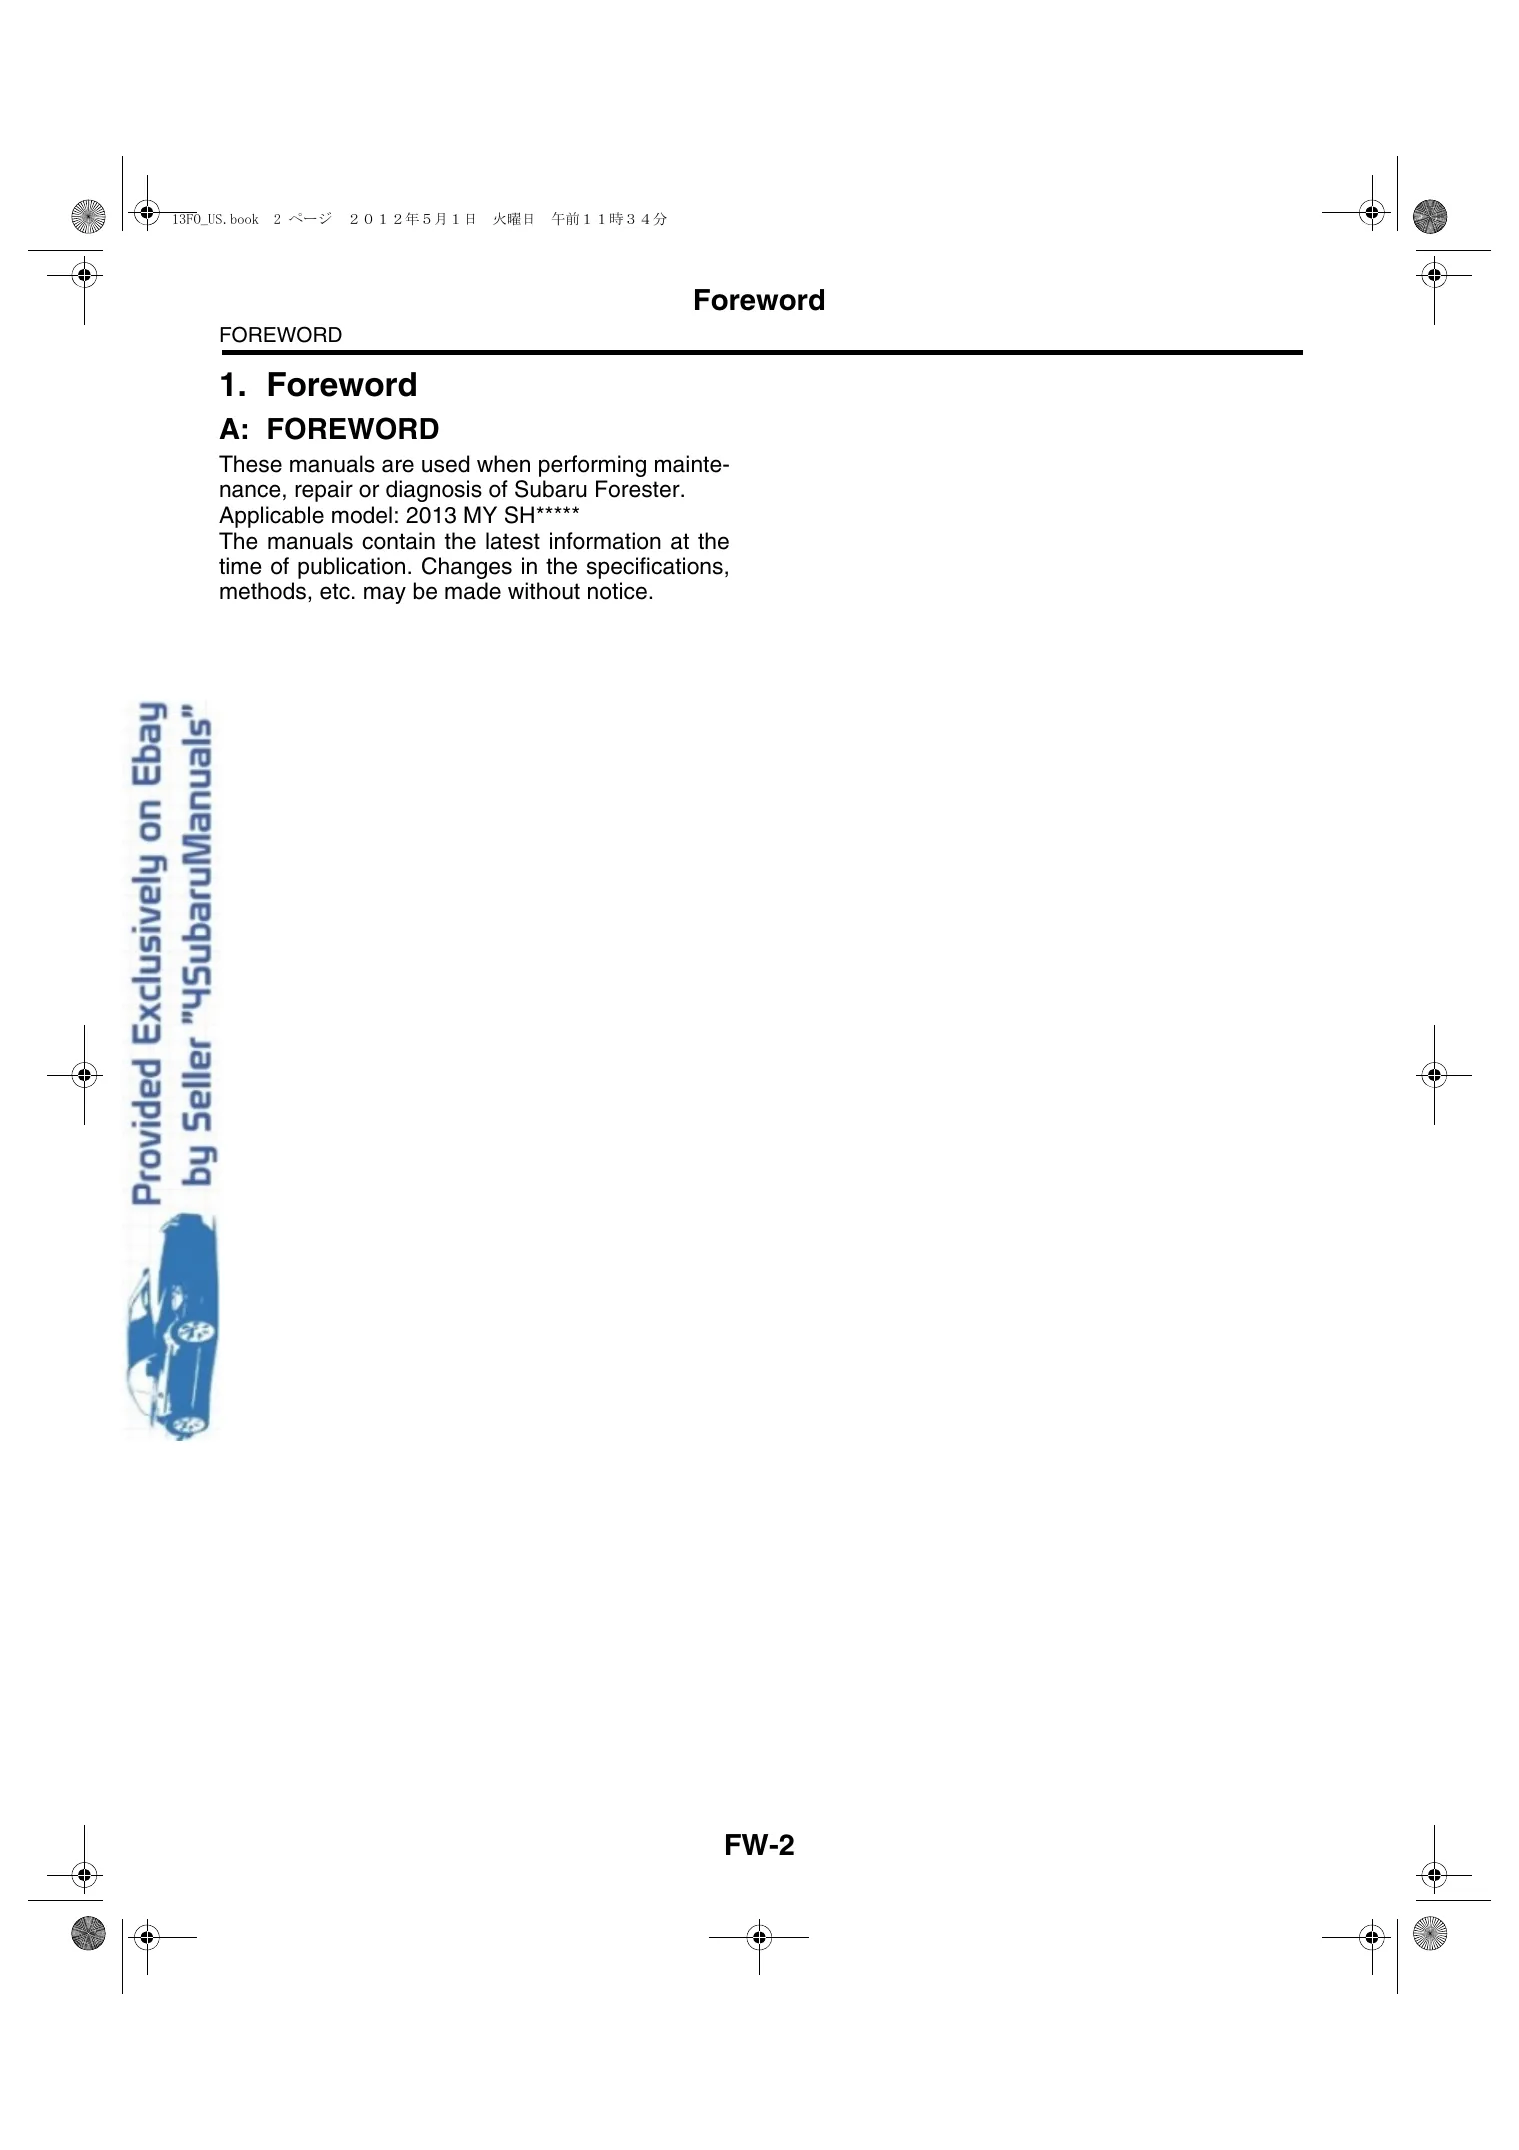 2013 Subaru Forester repair manual Preview image 1